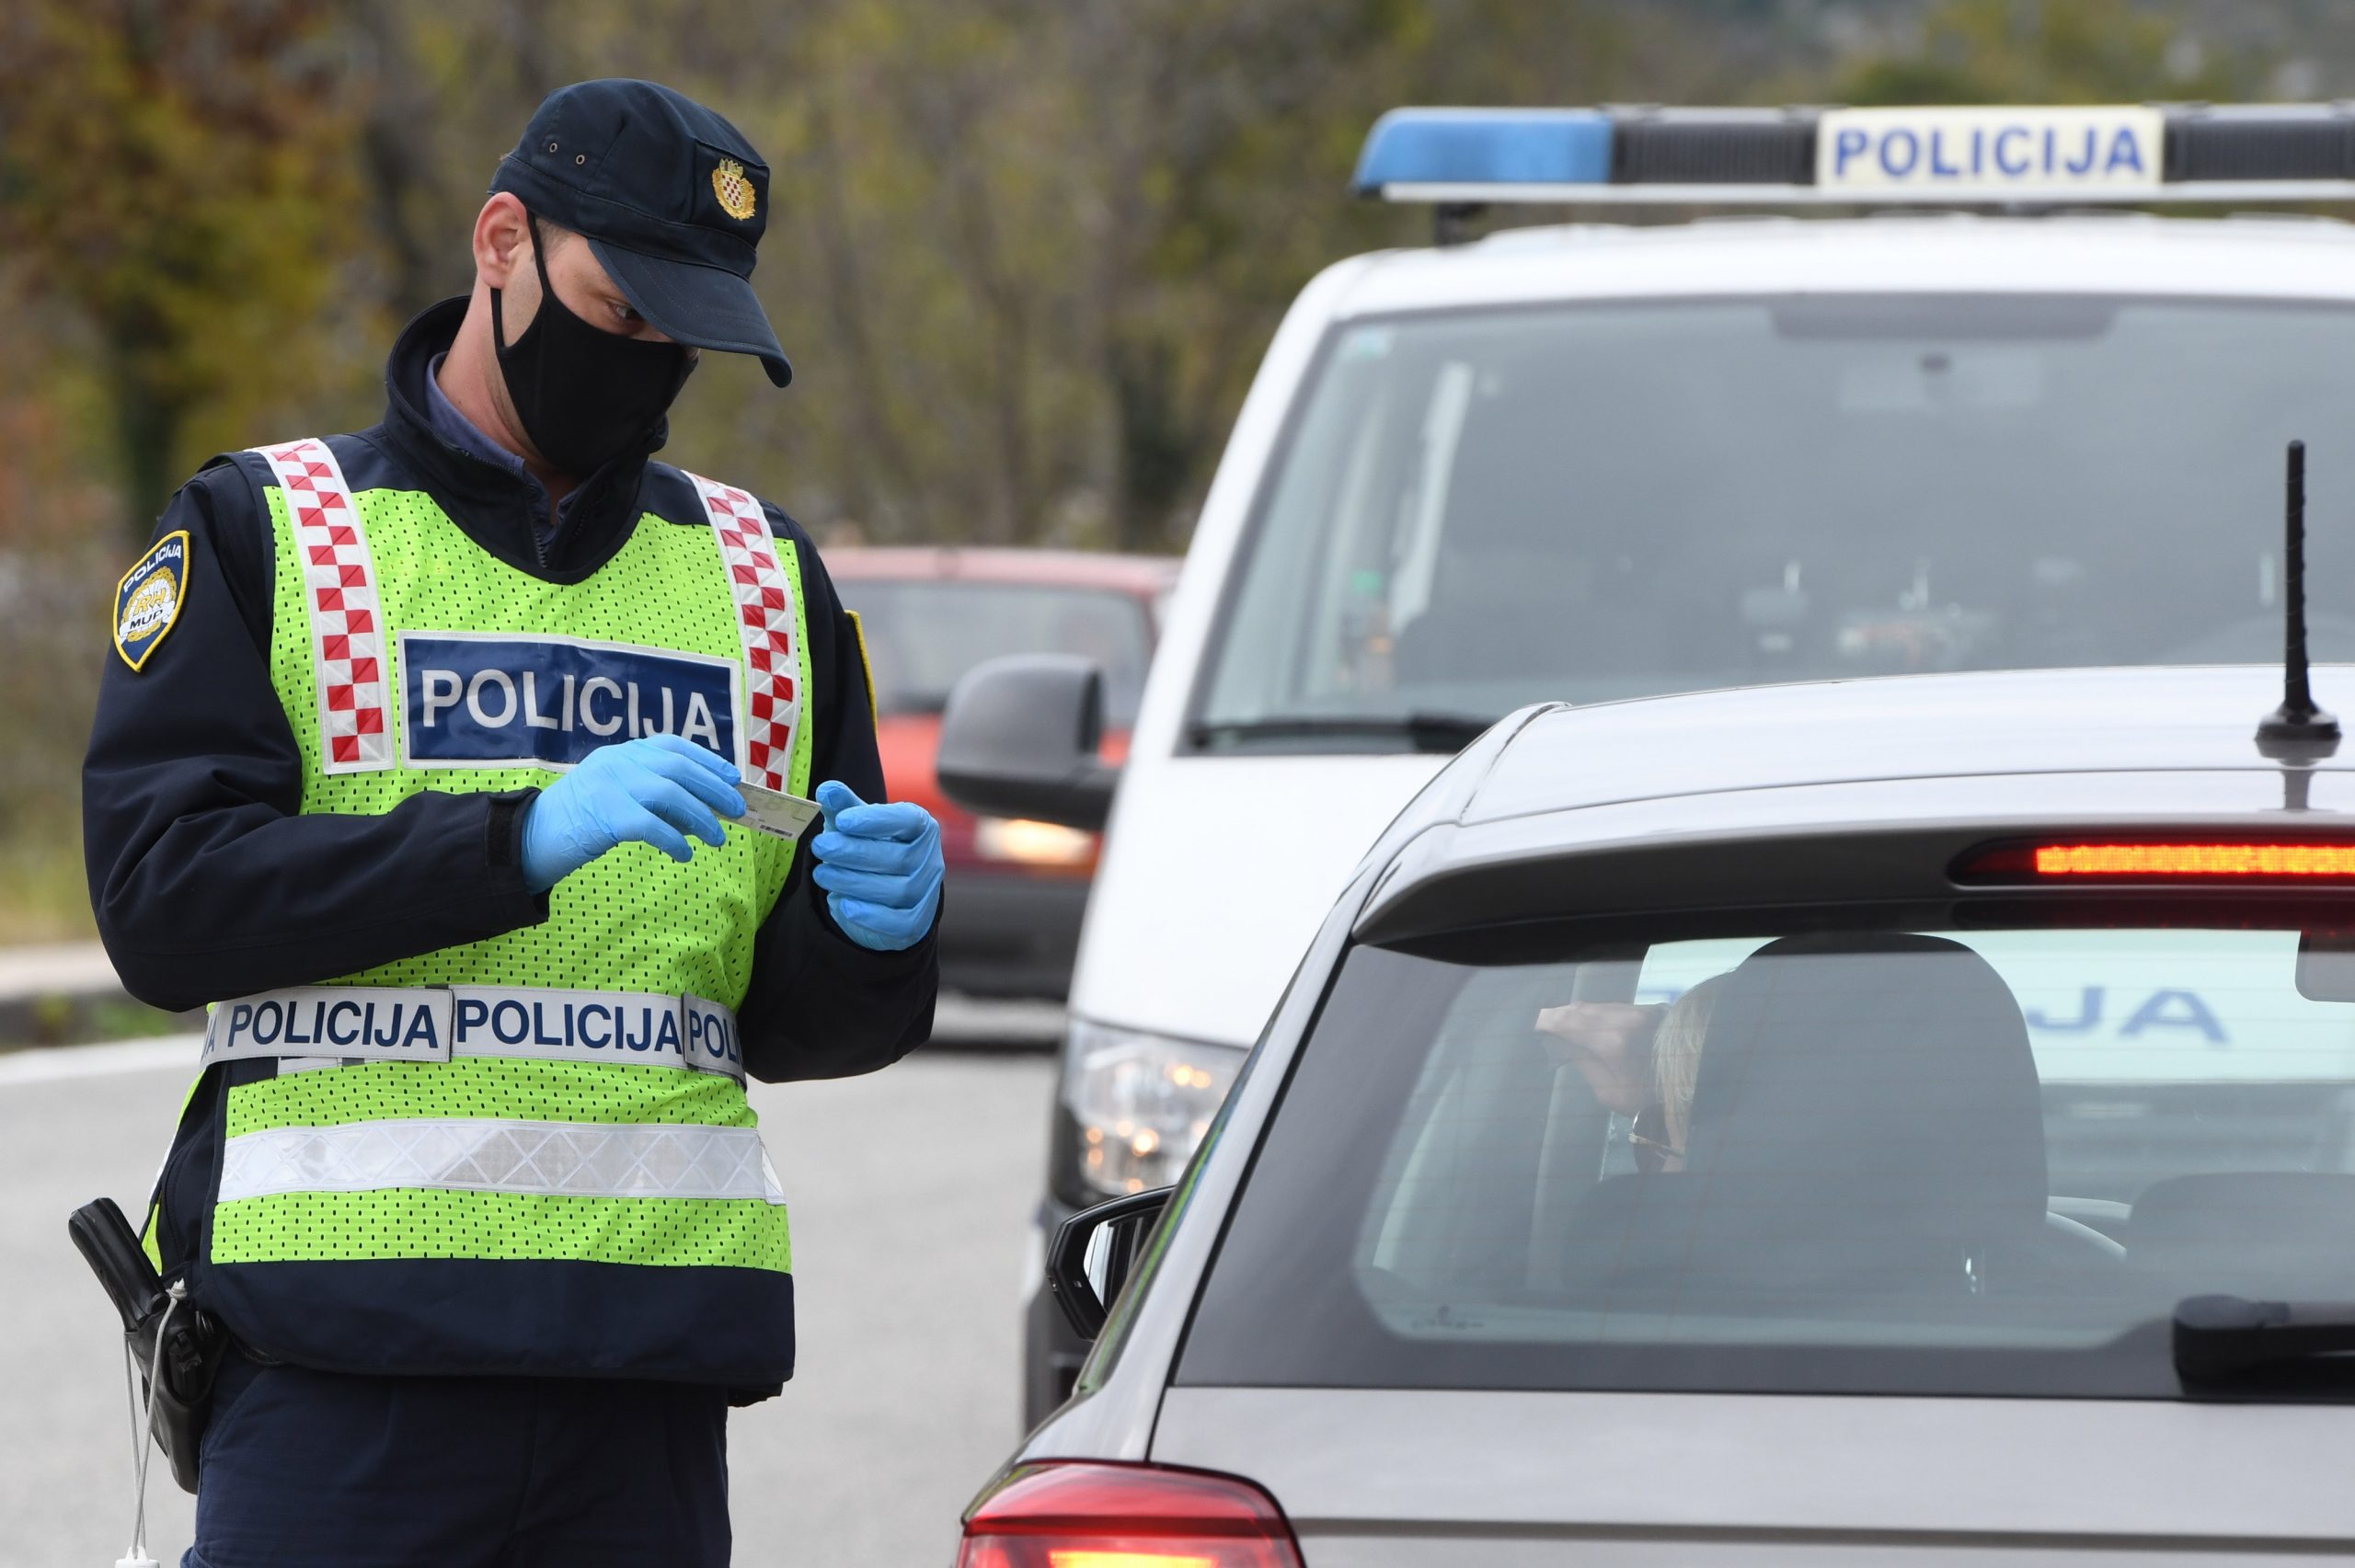 20.11.2020., Boraja - Policijska akcija nadzora brzine na podrucju cijele Sibensko-kninske zupanije.
Photo: Hrvoje Jelavic/PIXSELL